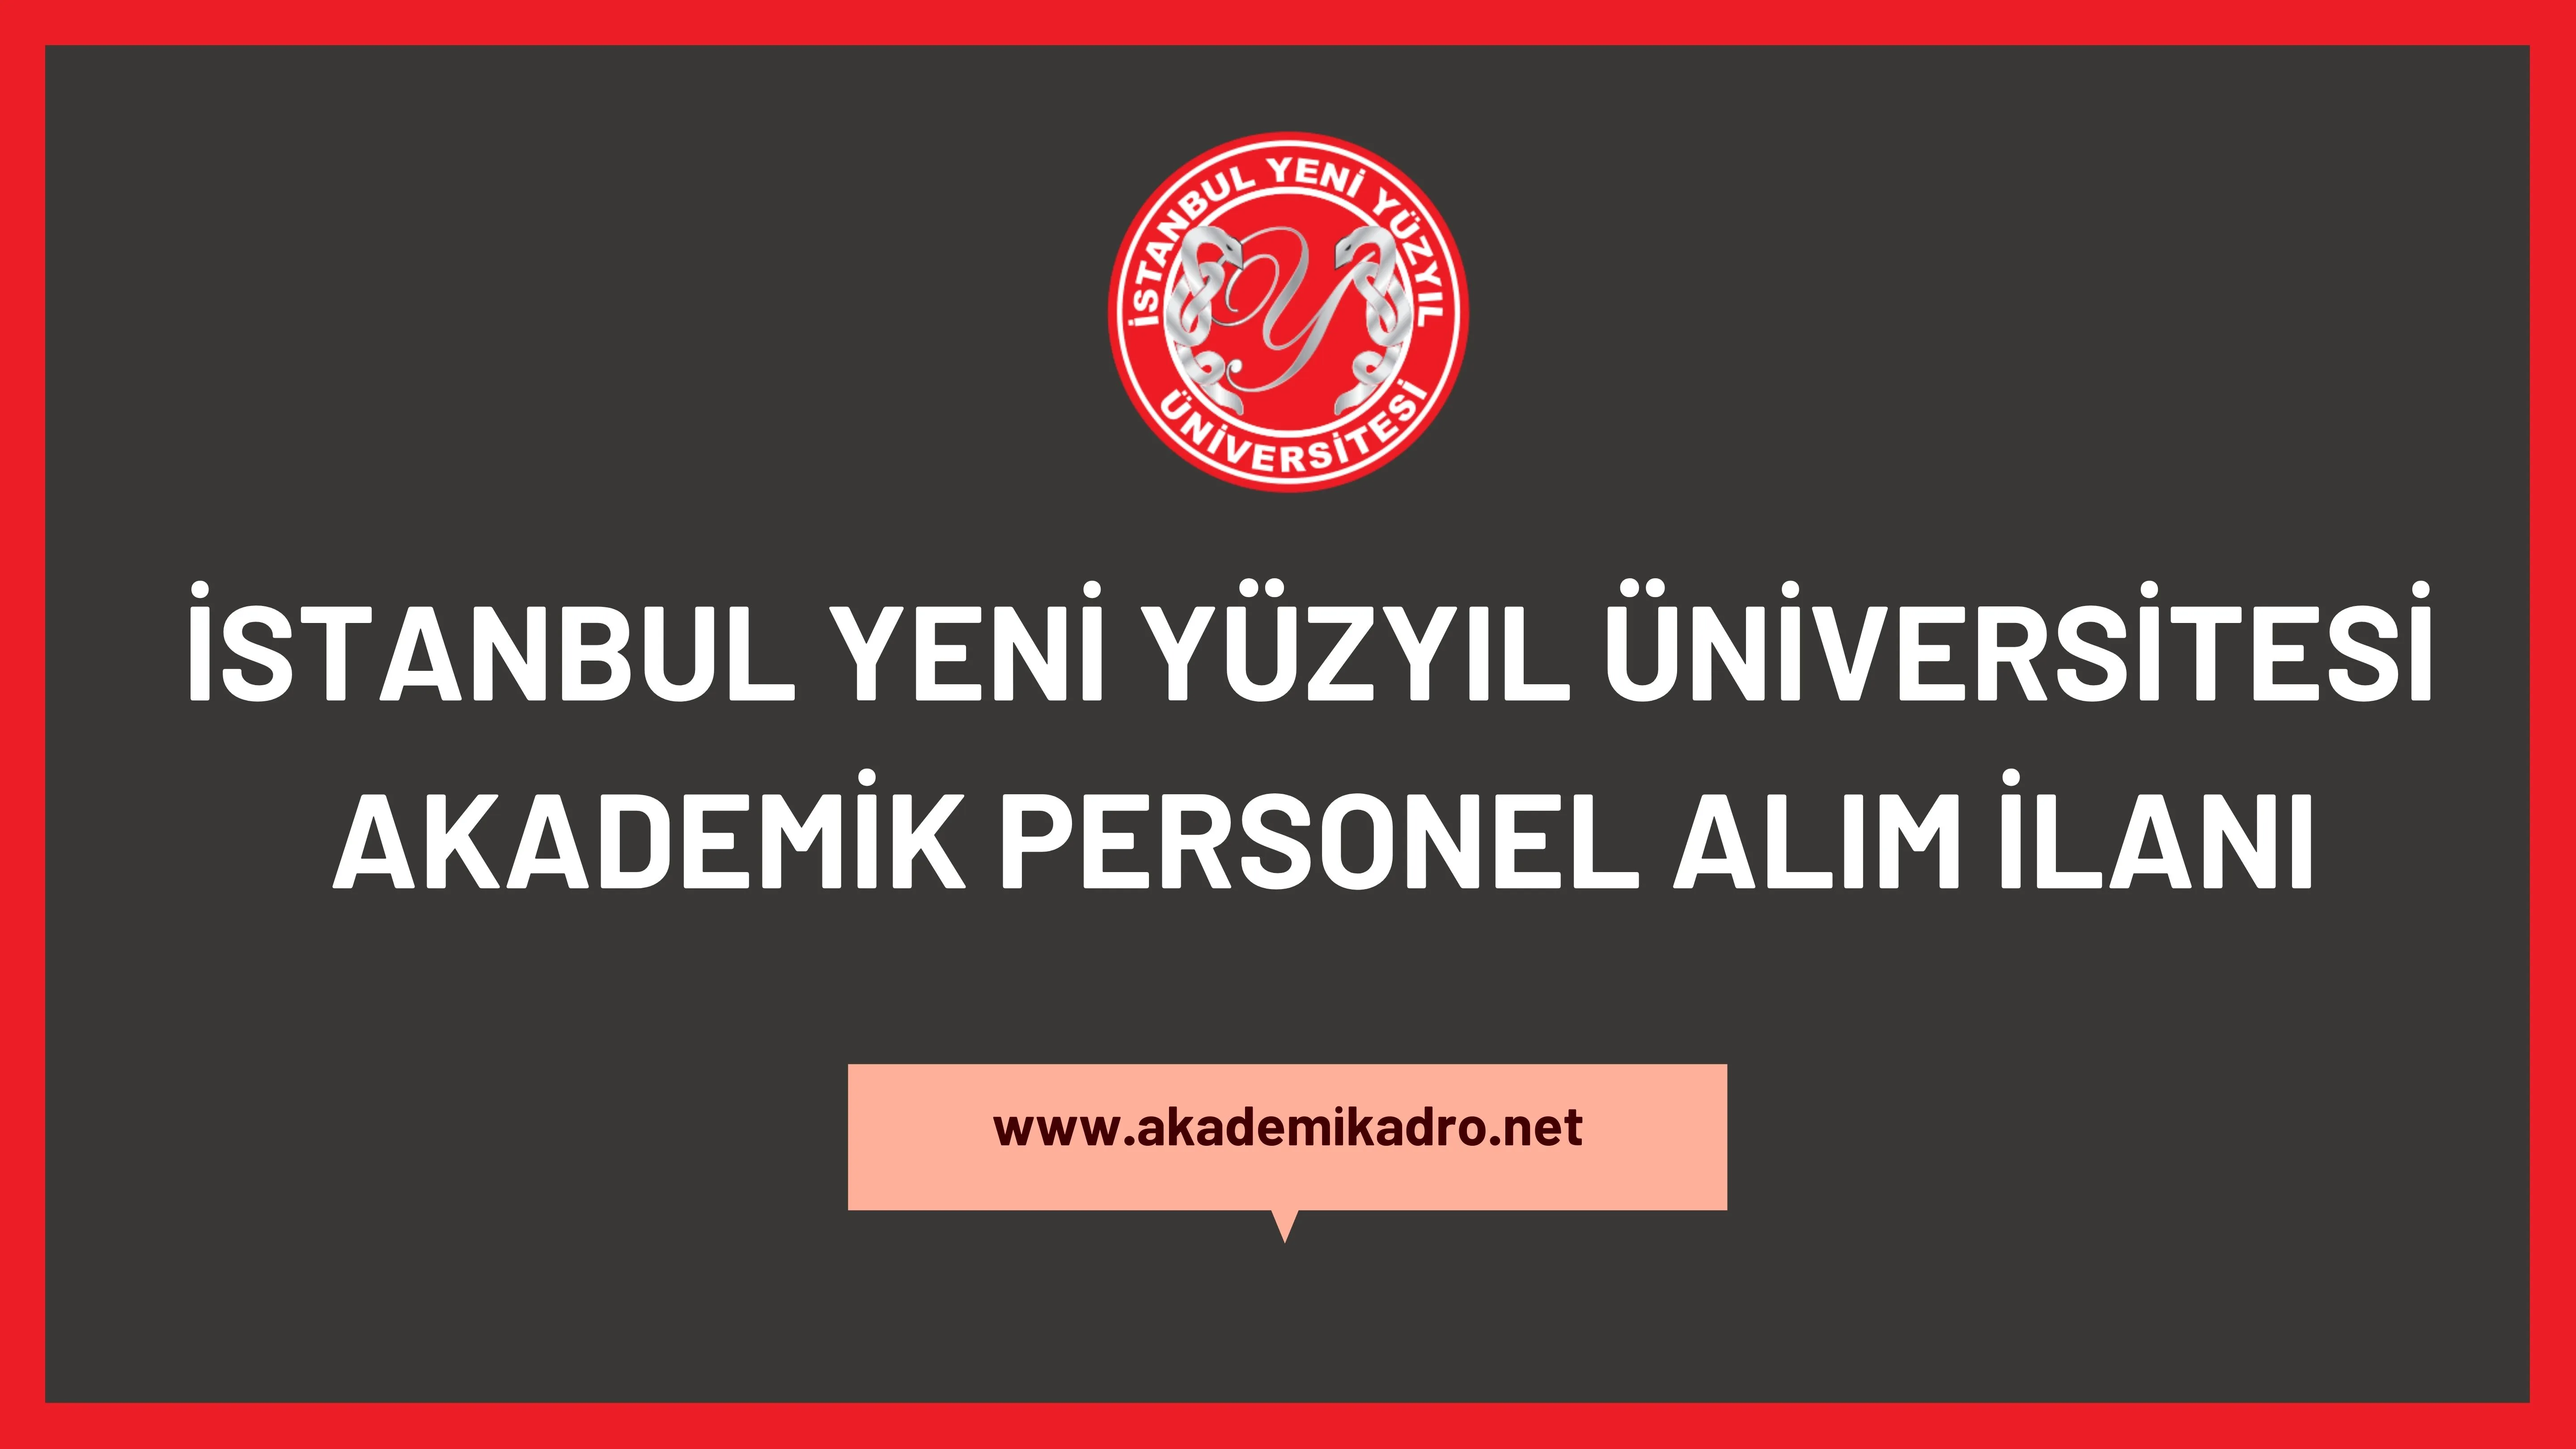 İstanbul Yeni Yüzyıl Üniversitesi 45 akademik personel alacak, son başvuru tarihi 21 Aralık 2022.